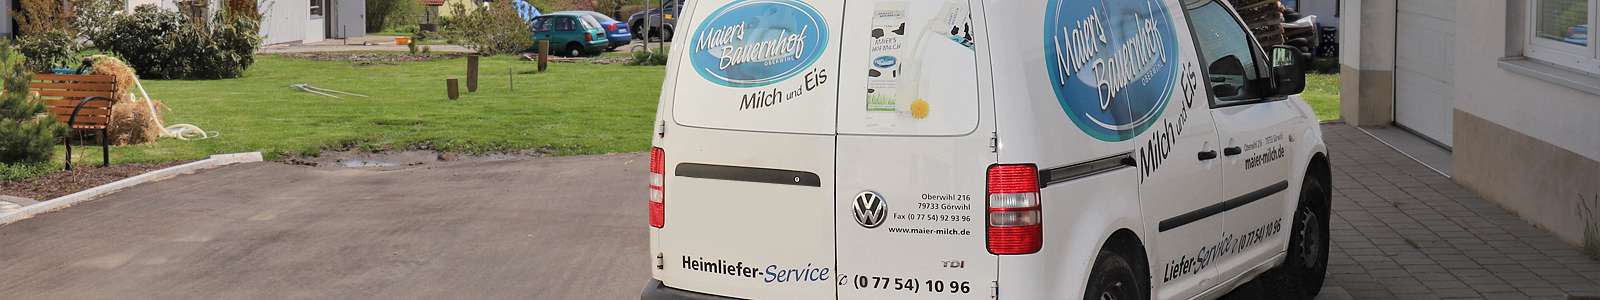 Lieferdienst | Maiers frische Milchprodukte, Oberwihl-Hotzenwald